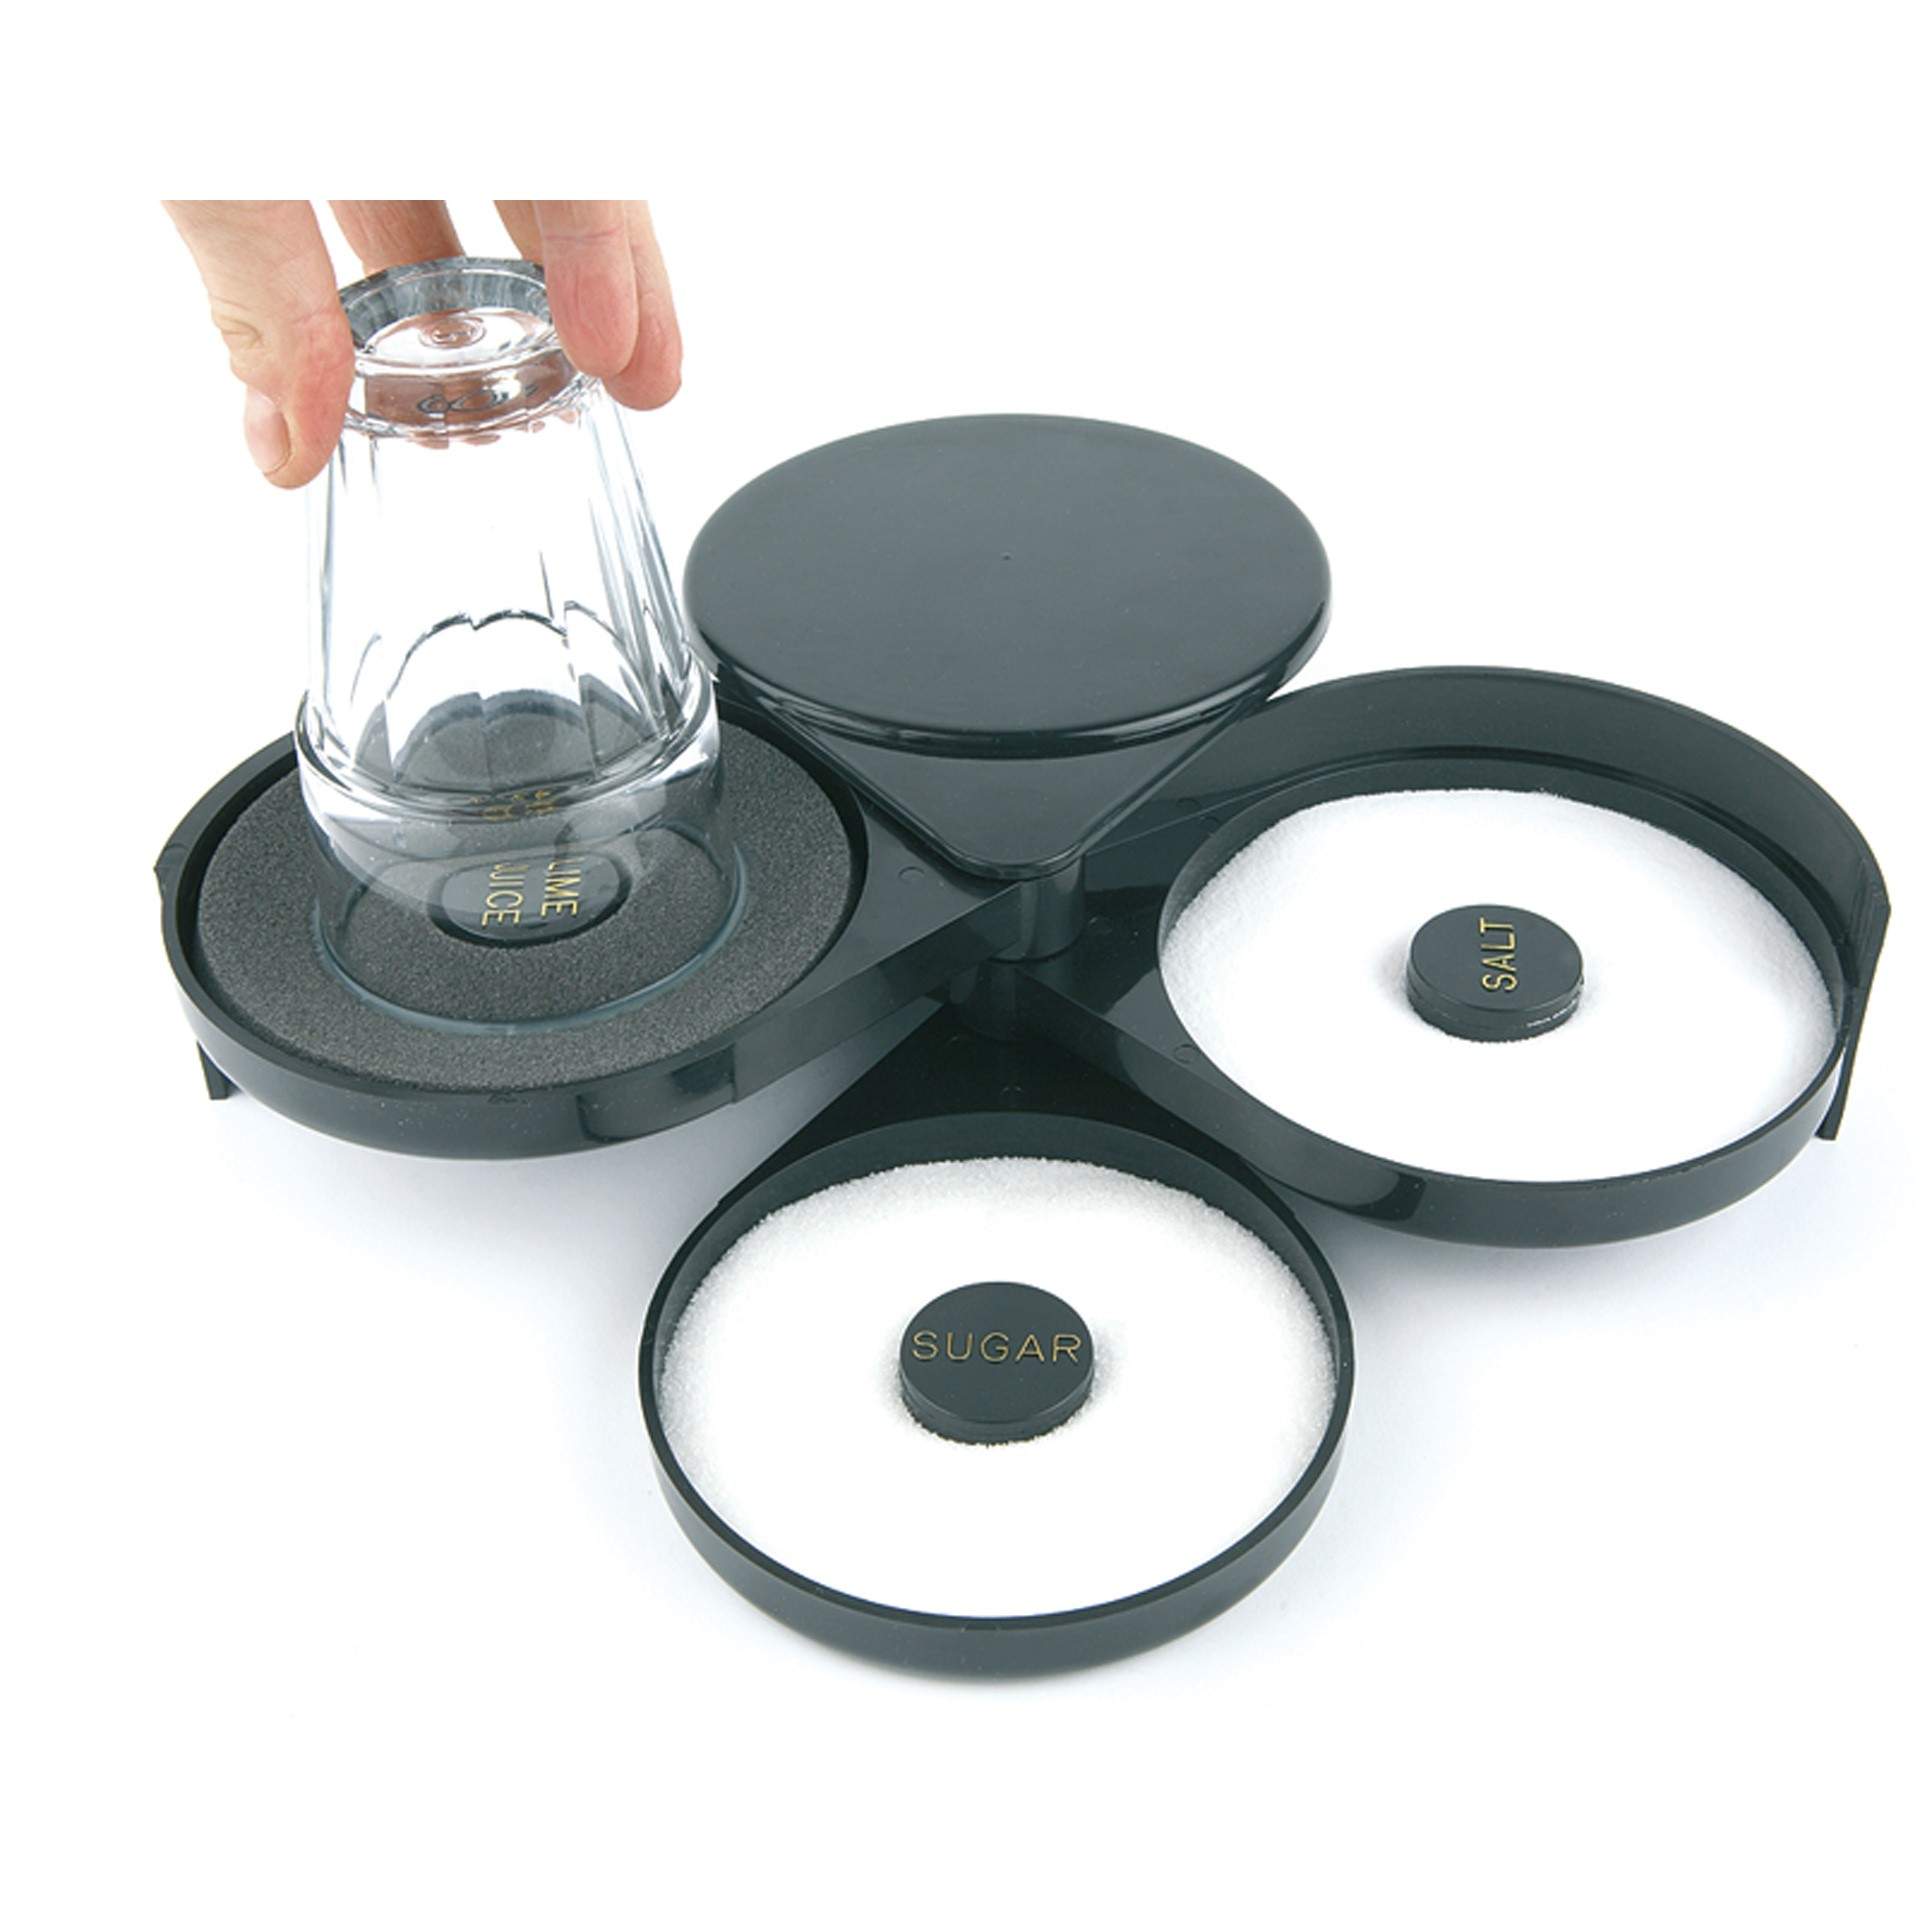 Glasumrander - Schwamm für Limettensaft - schwarz - Abm. 20 x 15,5 x 7,5 cm - ABS - 93175-B